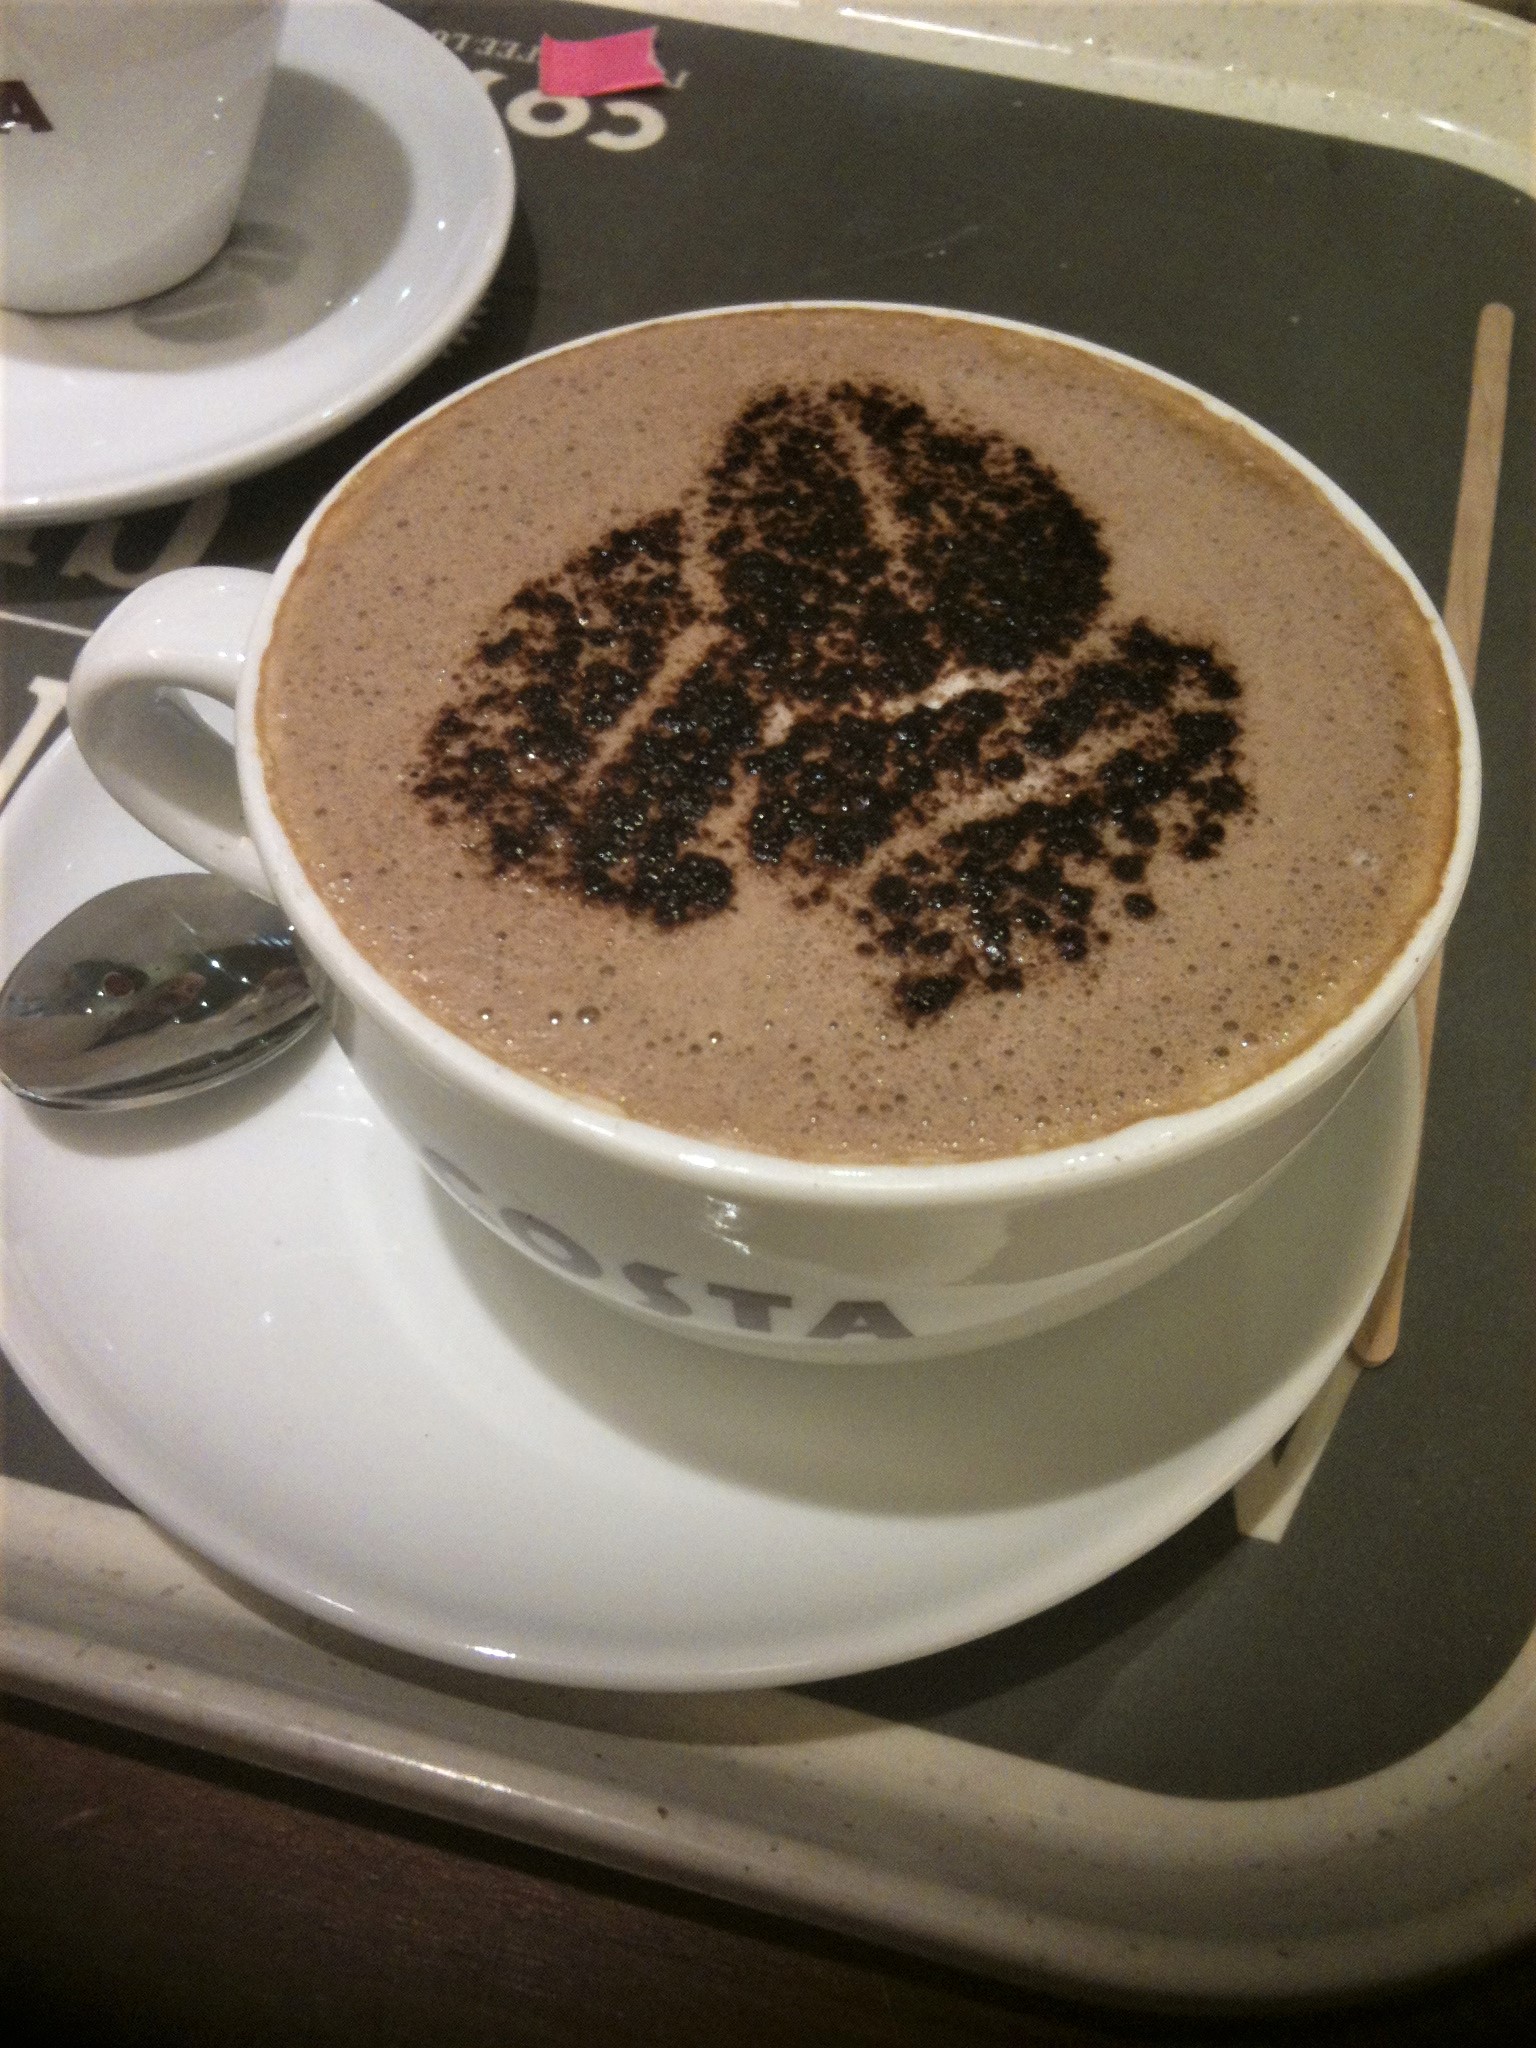 Coffee bean pattern in latte